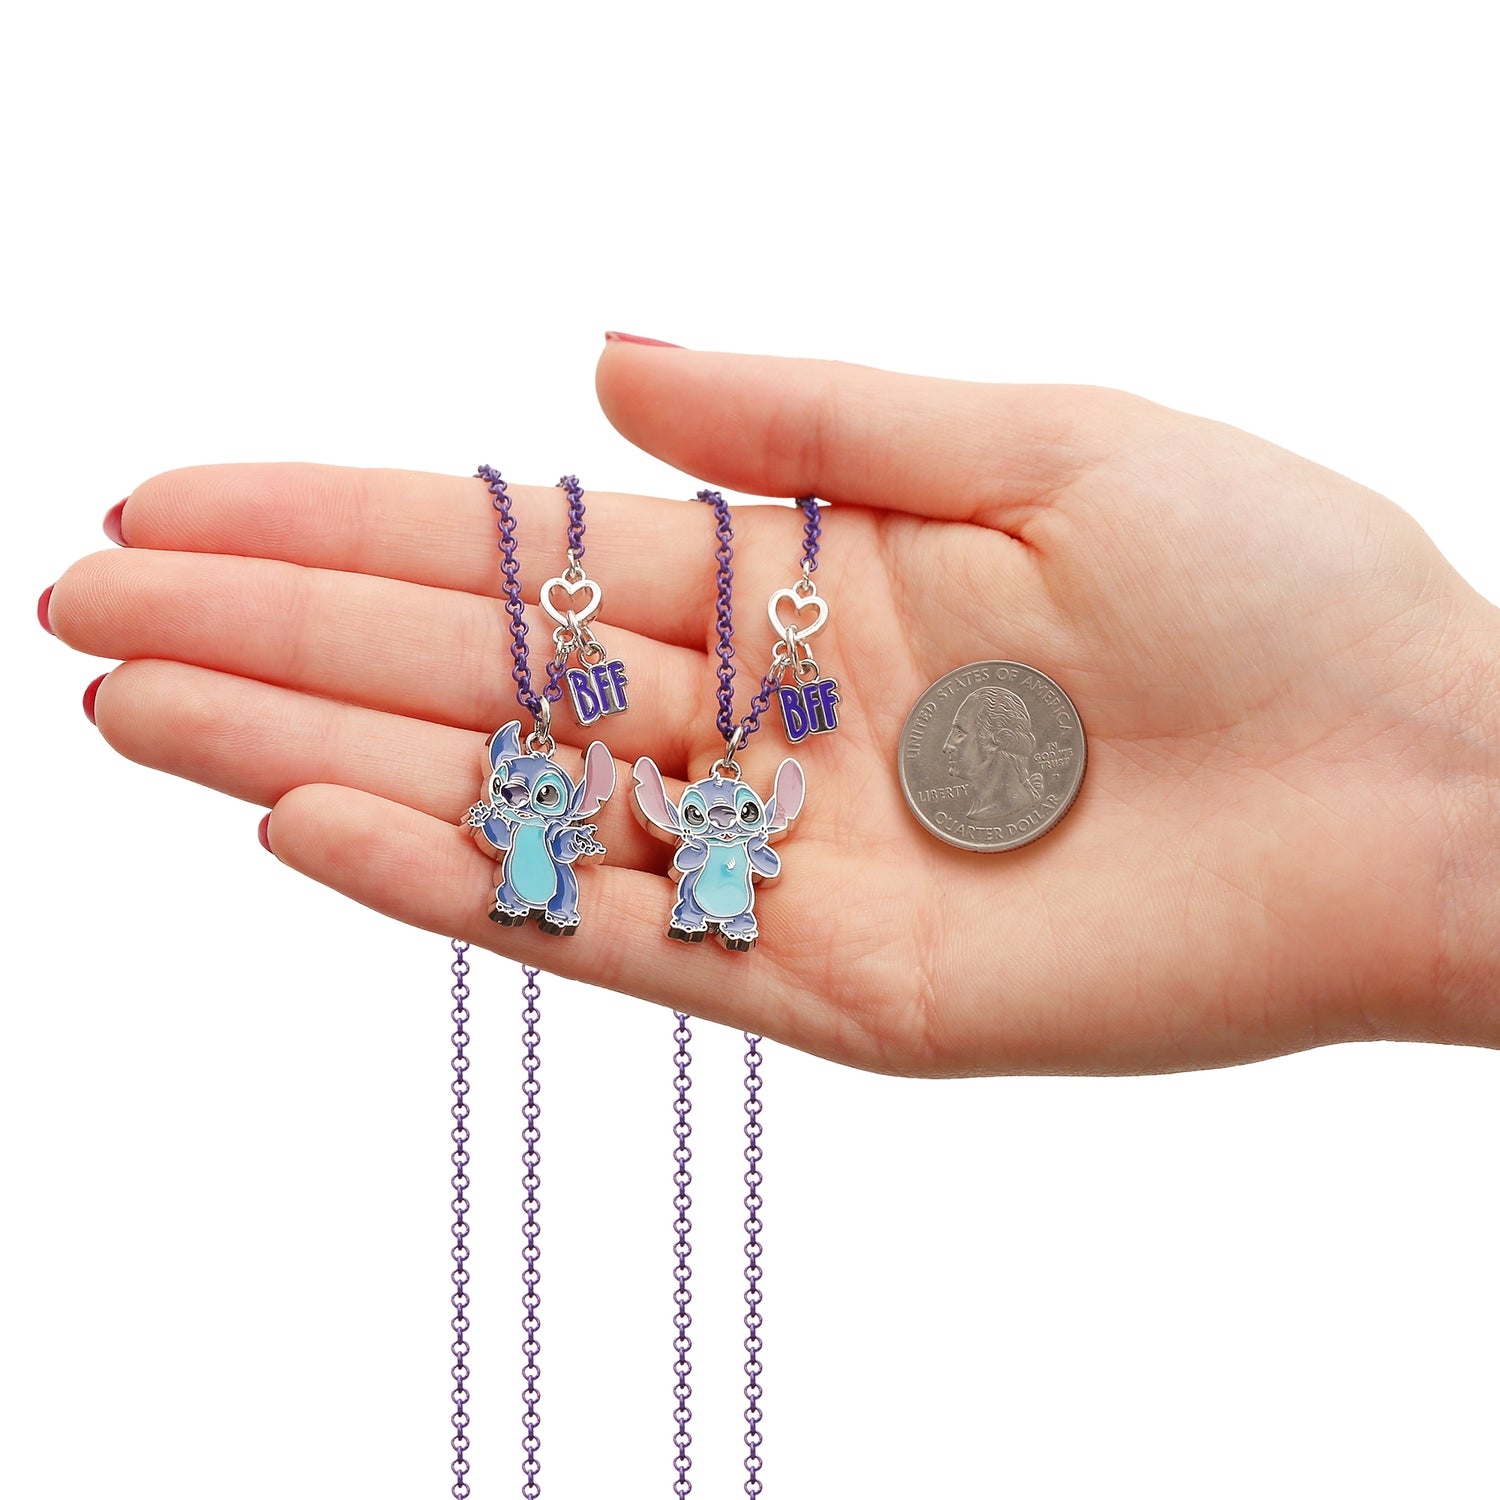 Disney Lilo & Stitch Girls BFF Necklace Set of 2- Best Friends Necklaces  with BFF and Stitch Charm- Stitch Jewelry - Walmart.com